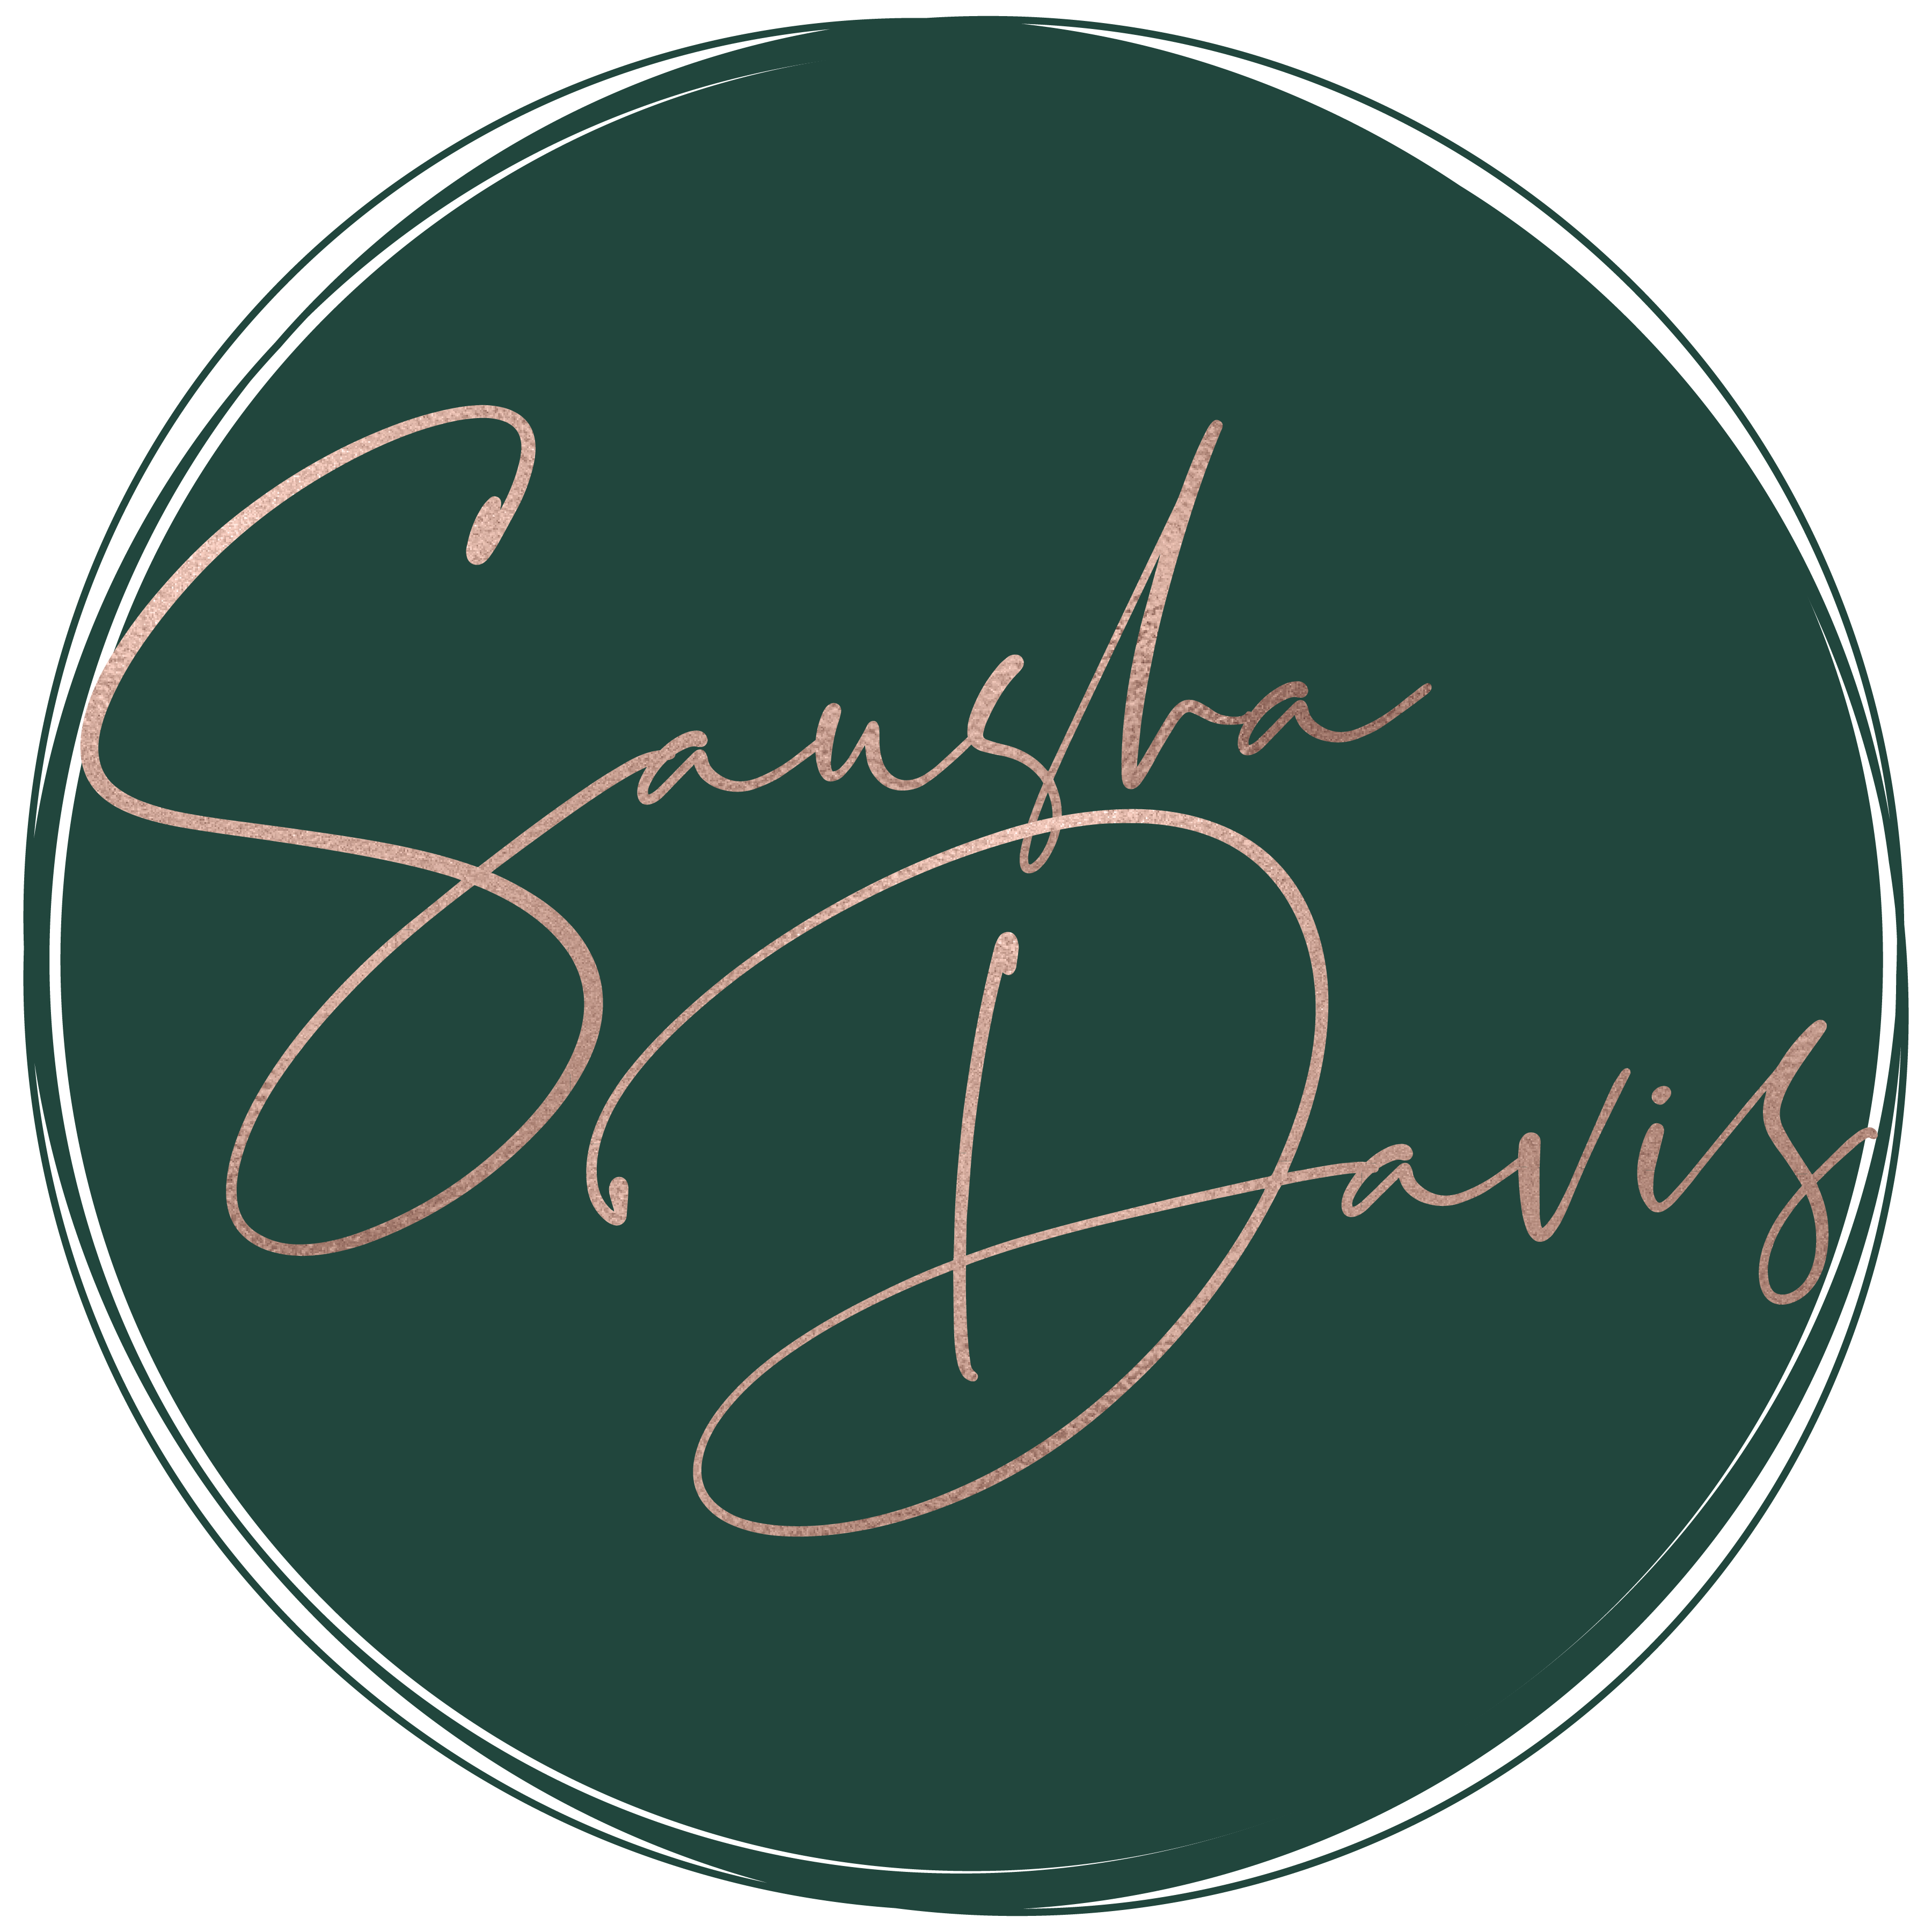 Sausha Davis logo